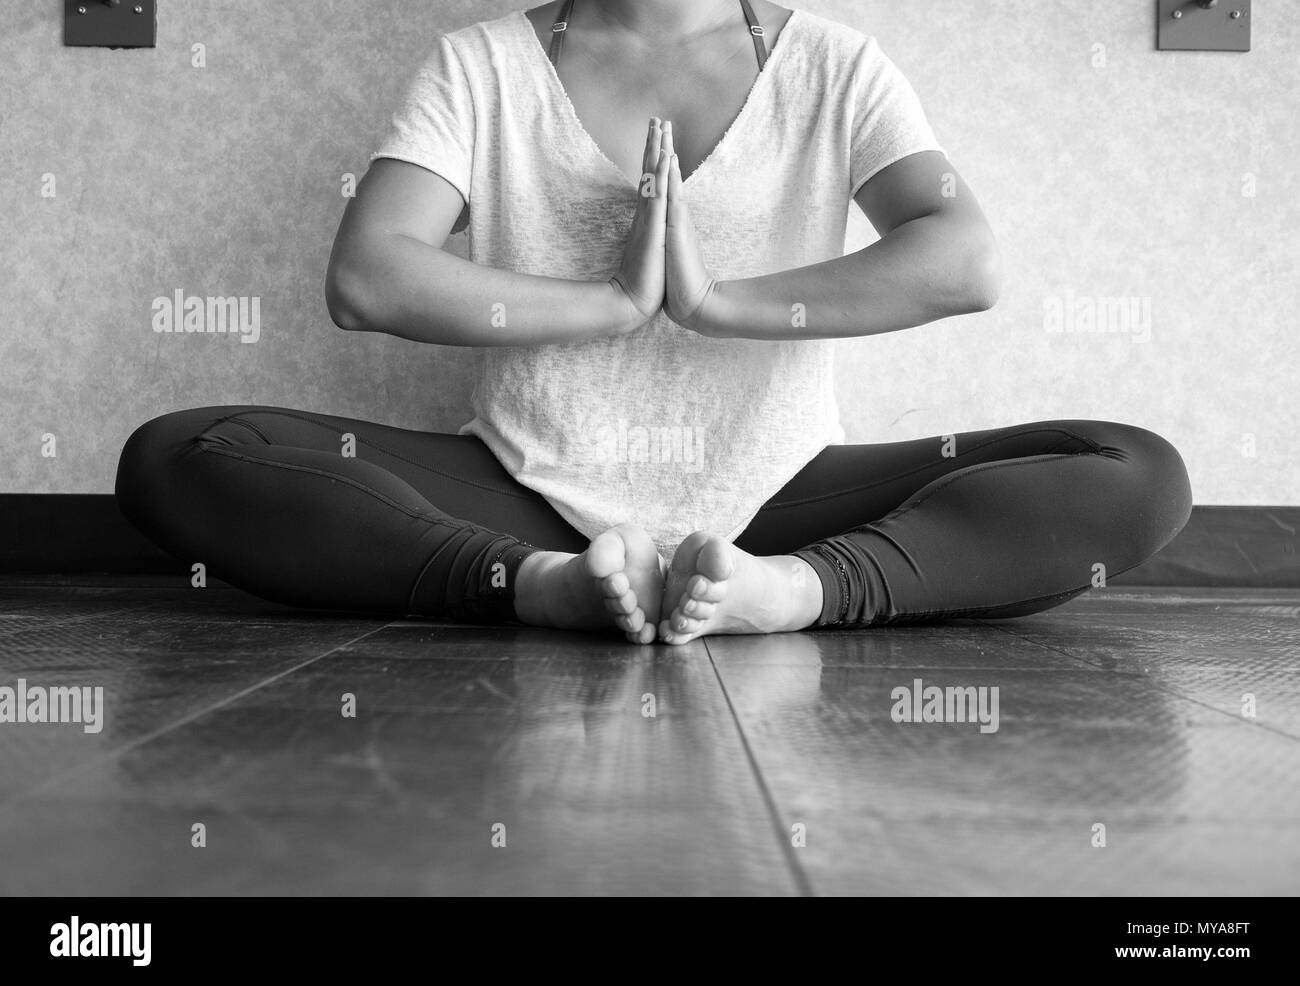 Version noir et blanc de jeunes femmes pratiquant le yoga en position papillon - Namaste Banque D'Images